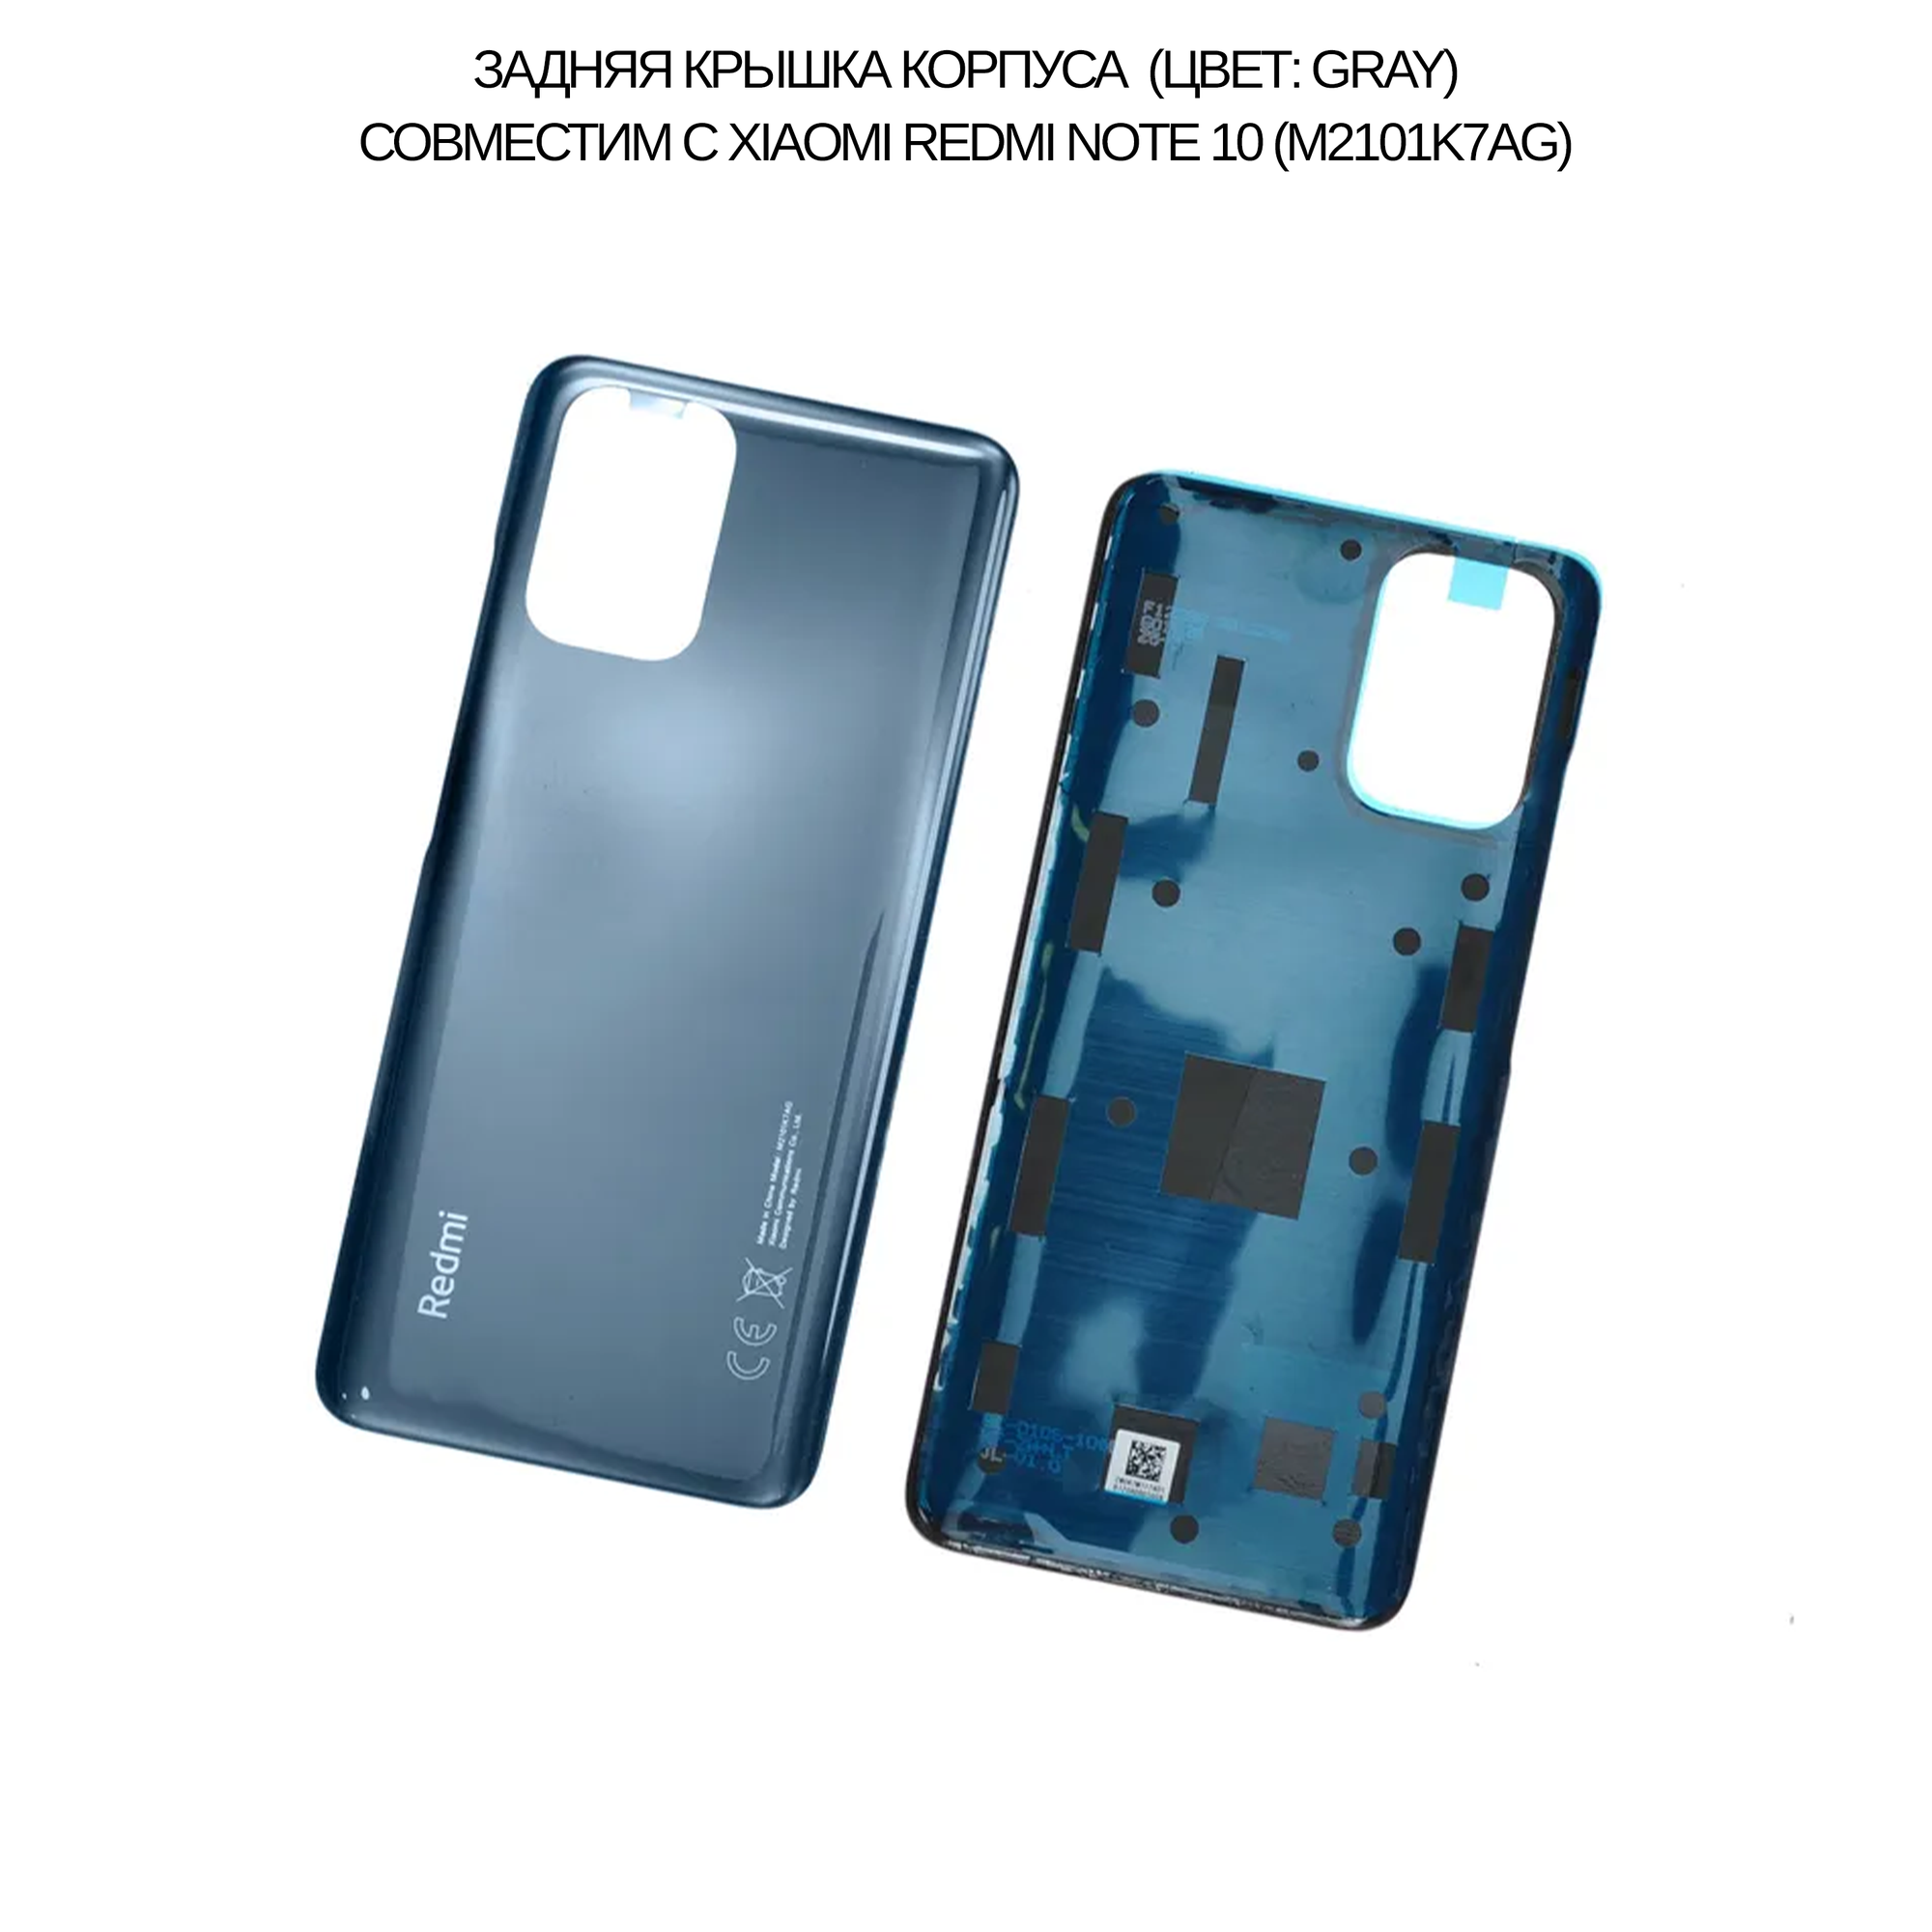 Задняя крышка корпуса совместим с Xiaomi Redmi Note 10 (M2101K7AG) (цвет: Onyx Gray)